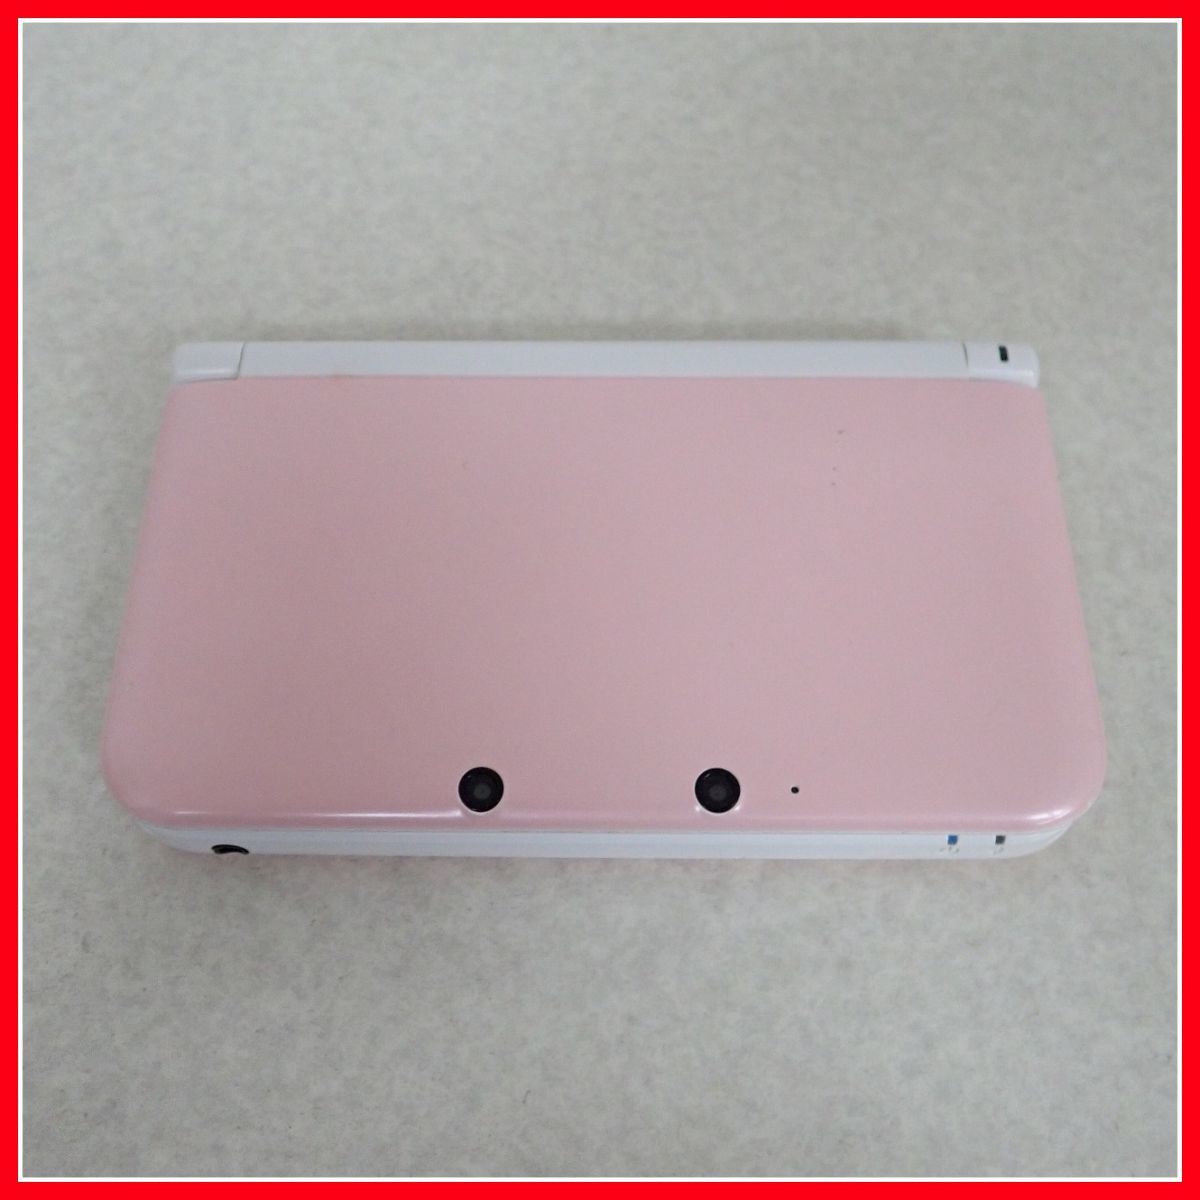 上等な 59%OFF!】 【新品未使用】Nintendo Newニンテンドー3DS NEW 3dsLL ピンク×ホワイト中古ソフト付き LL ピンク 